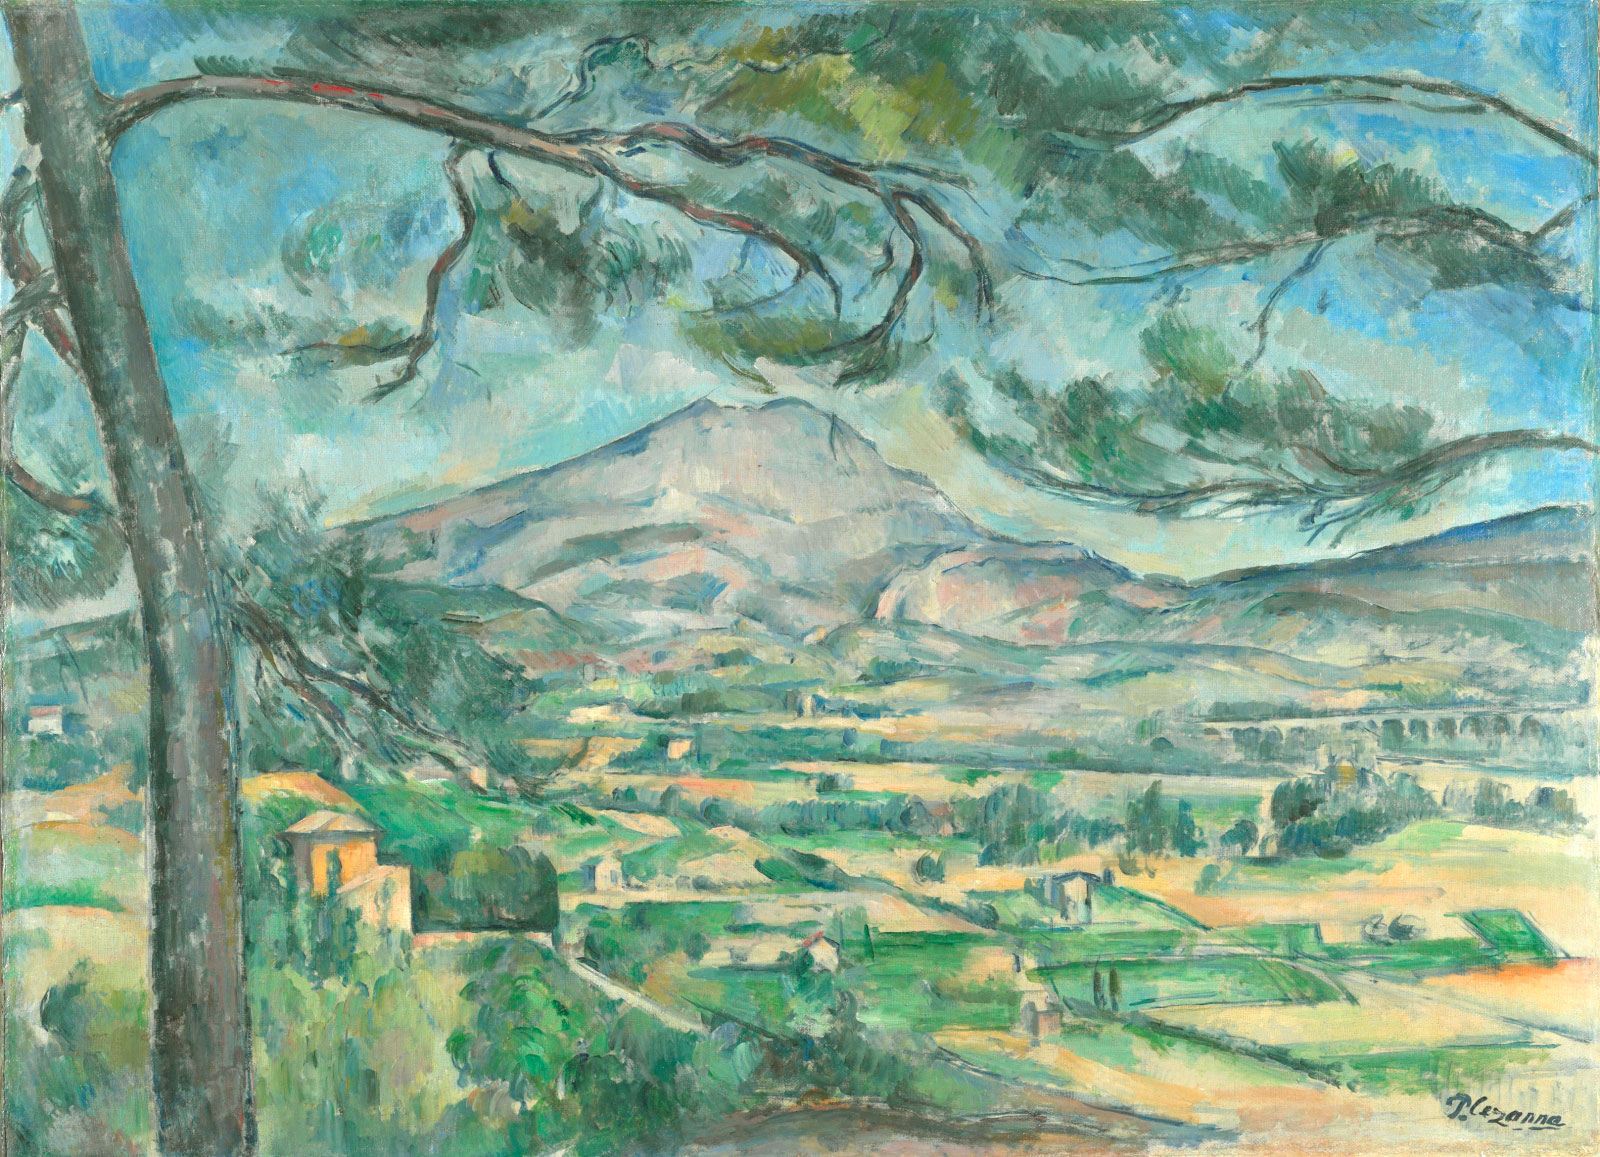 Paul Cézanne: Montagne Sainte-Victoire with Large Pine, circa 1887